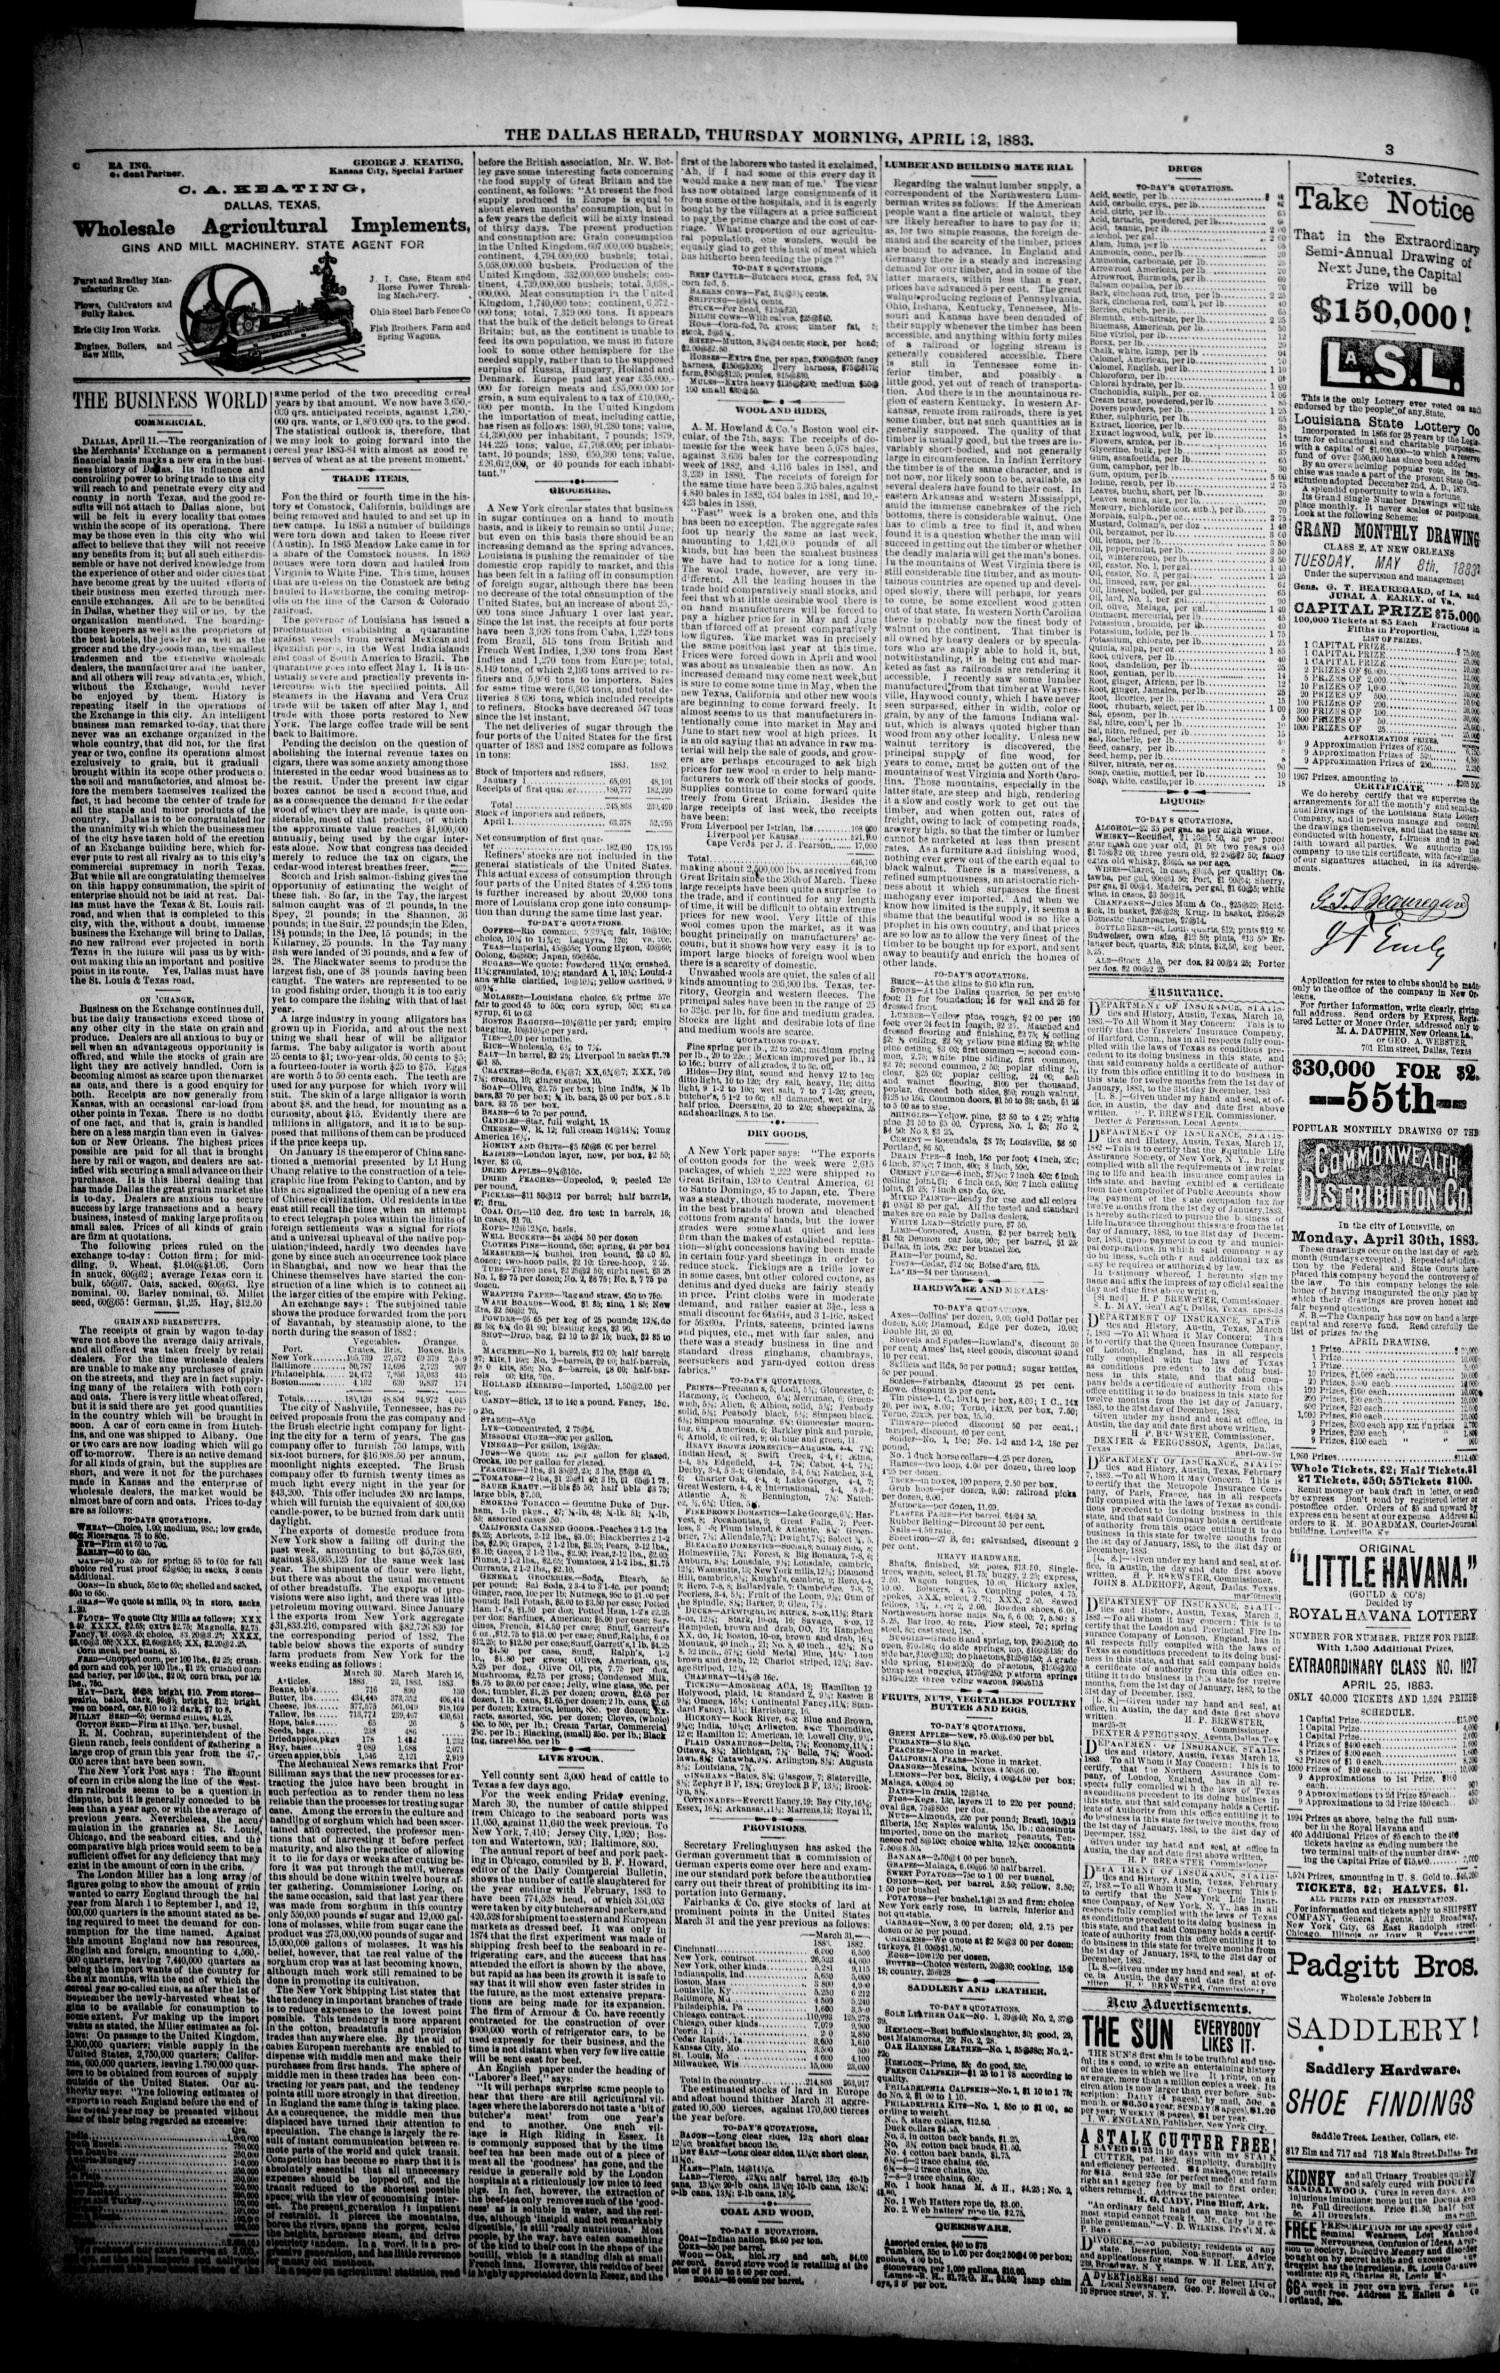 Naw Dati Xxx 12 Sal - The Dallas Daily Herald. (Dallas, Tex.), Vol. 30, No. 122, Ed. 1 Thursday,  April 12, 1883 - Page 6 of 8 - The Portal to Texas History